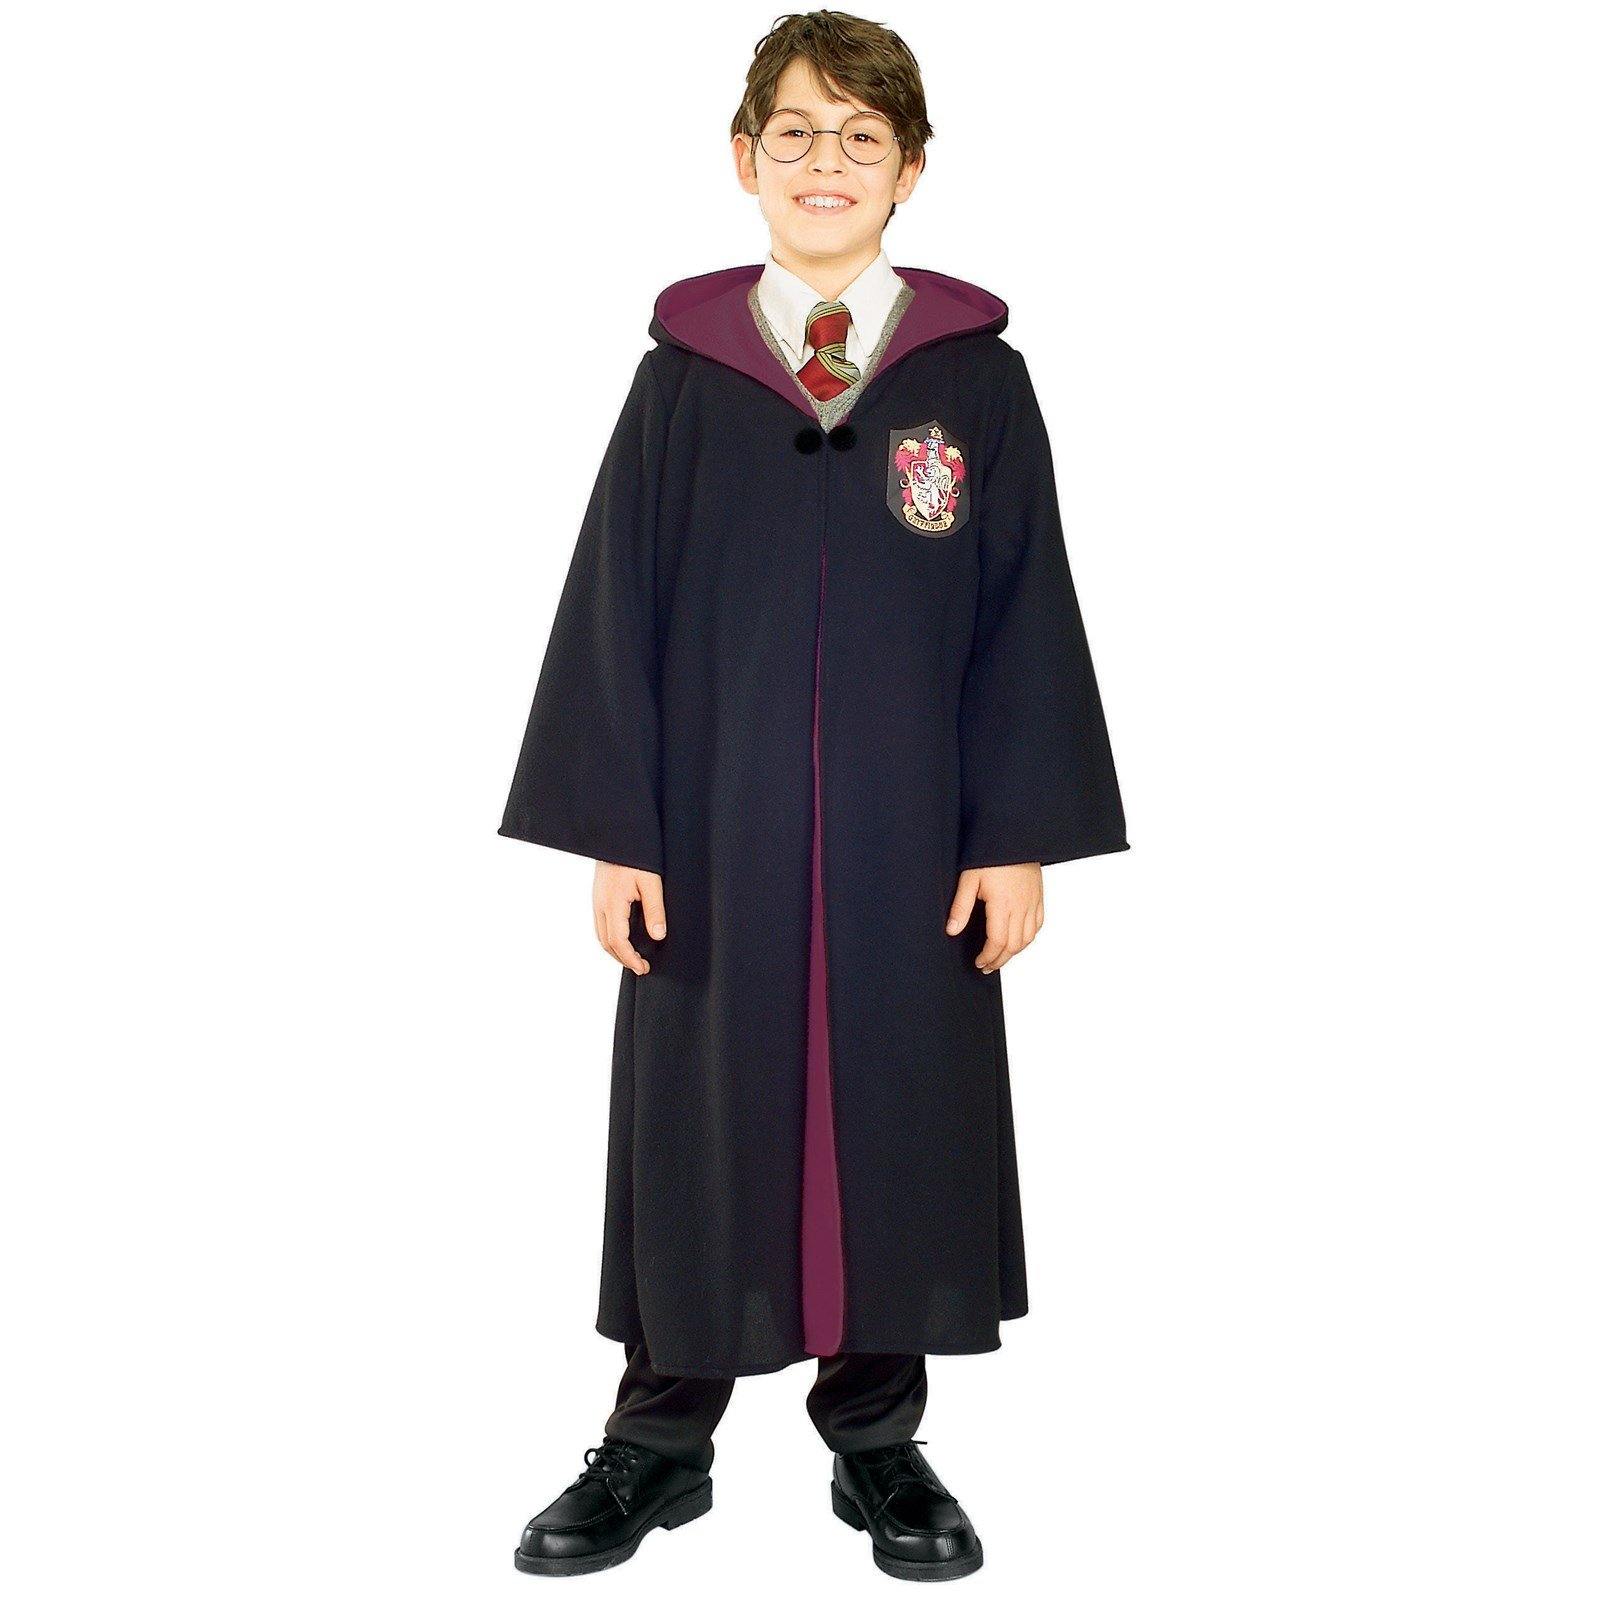 Harry Potter Deluxe Robe Children'S Halloween Costume